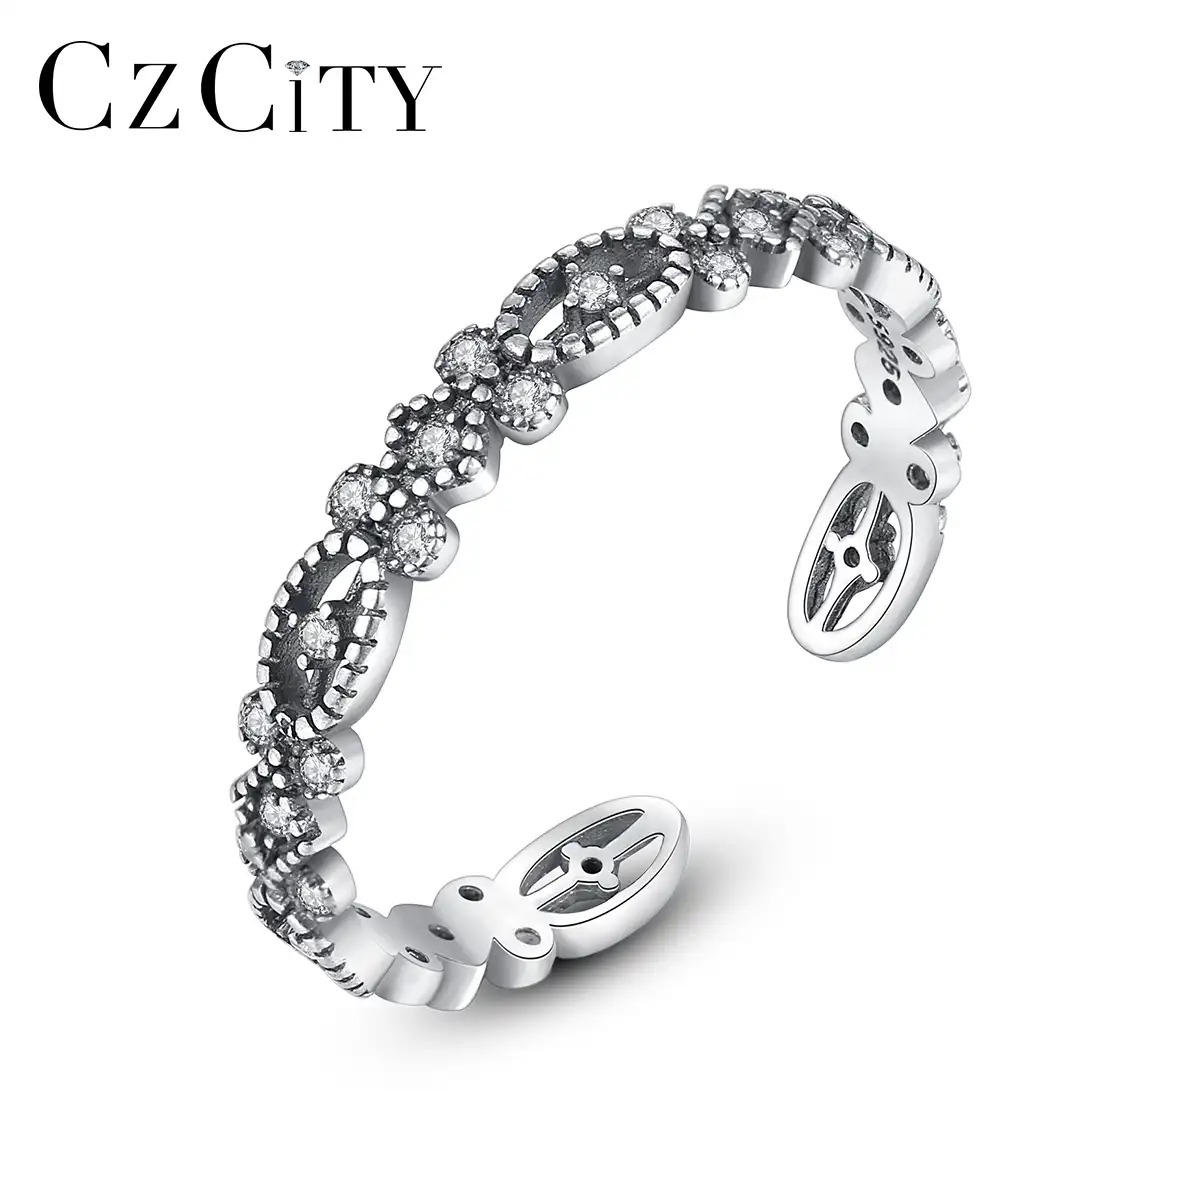 CZCITY新しいデザインヴィンテージタイシルバーリングミニCZパヴェアンティーク婚約指輪女性用結婚式高品質ギフト